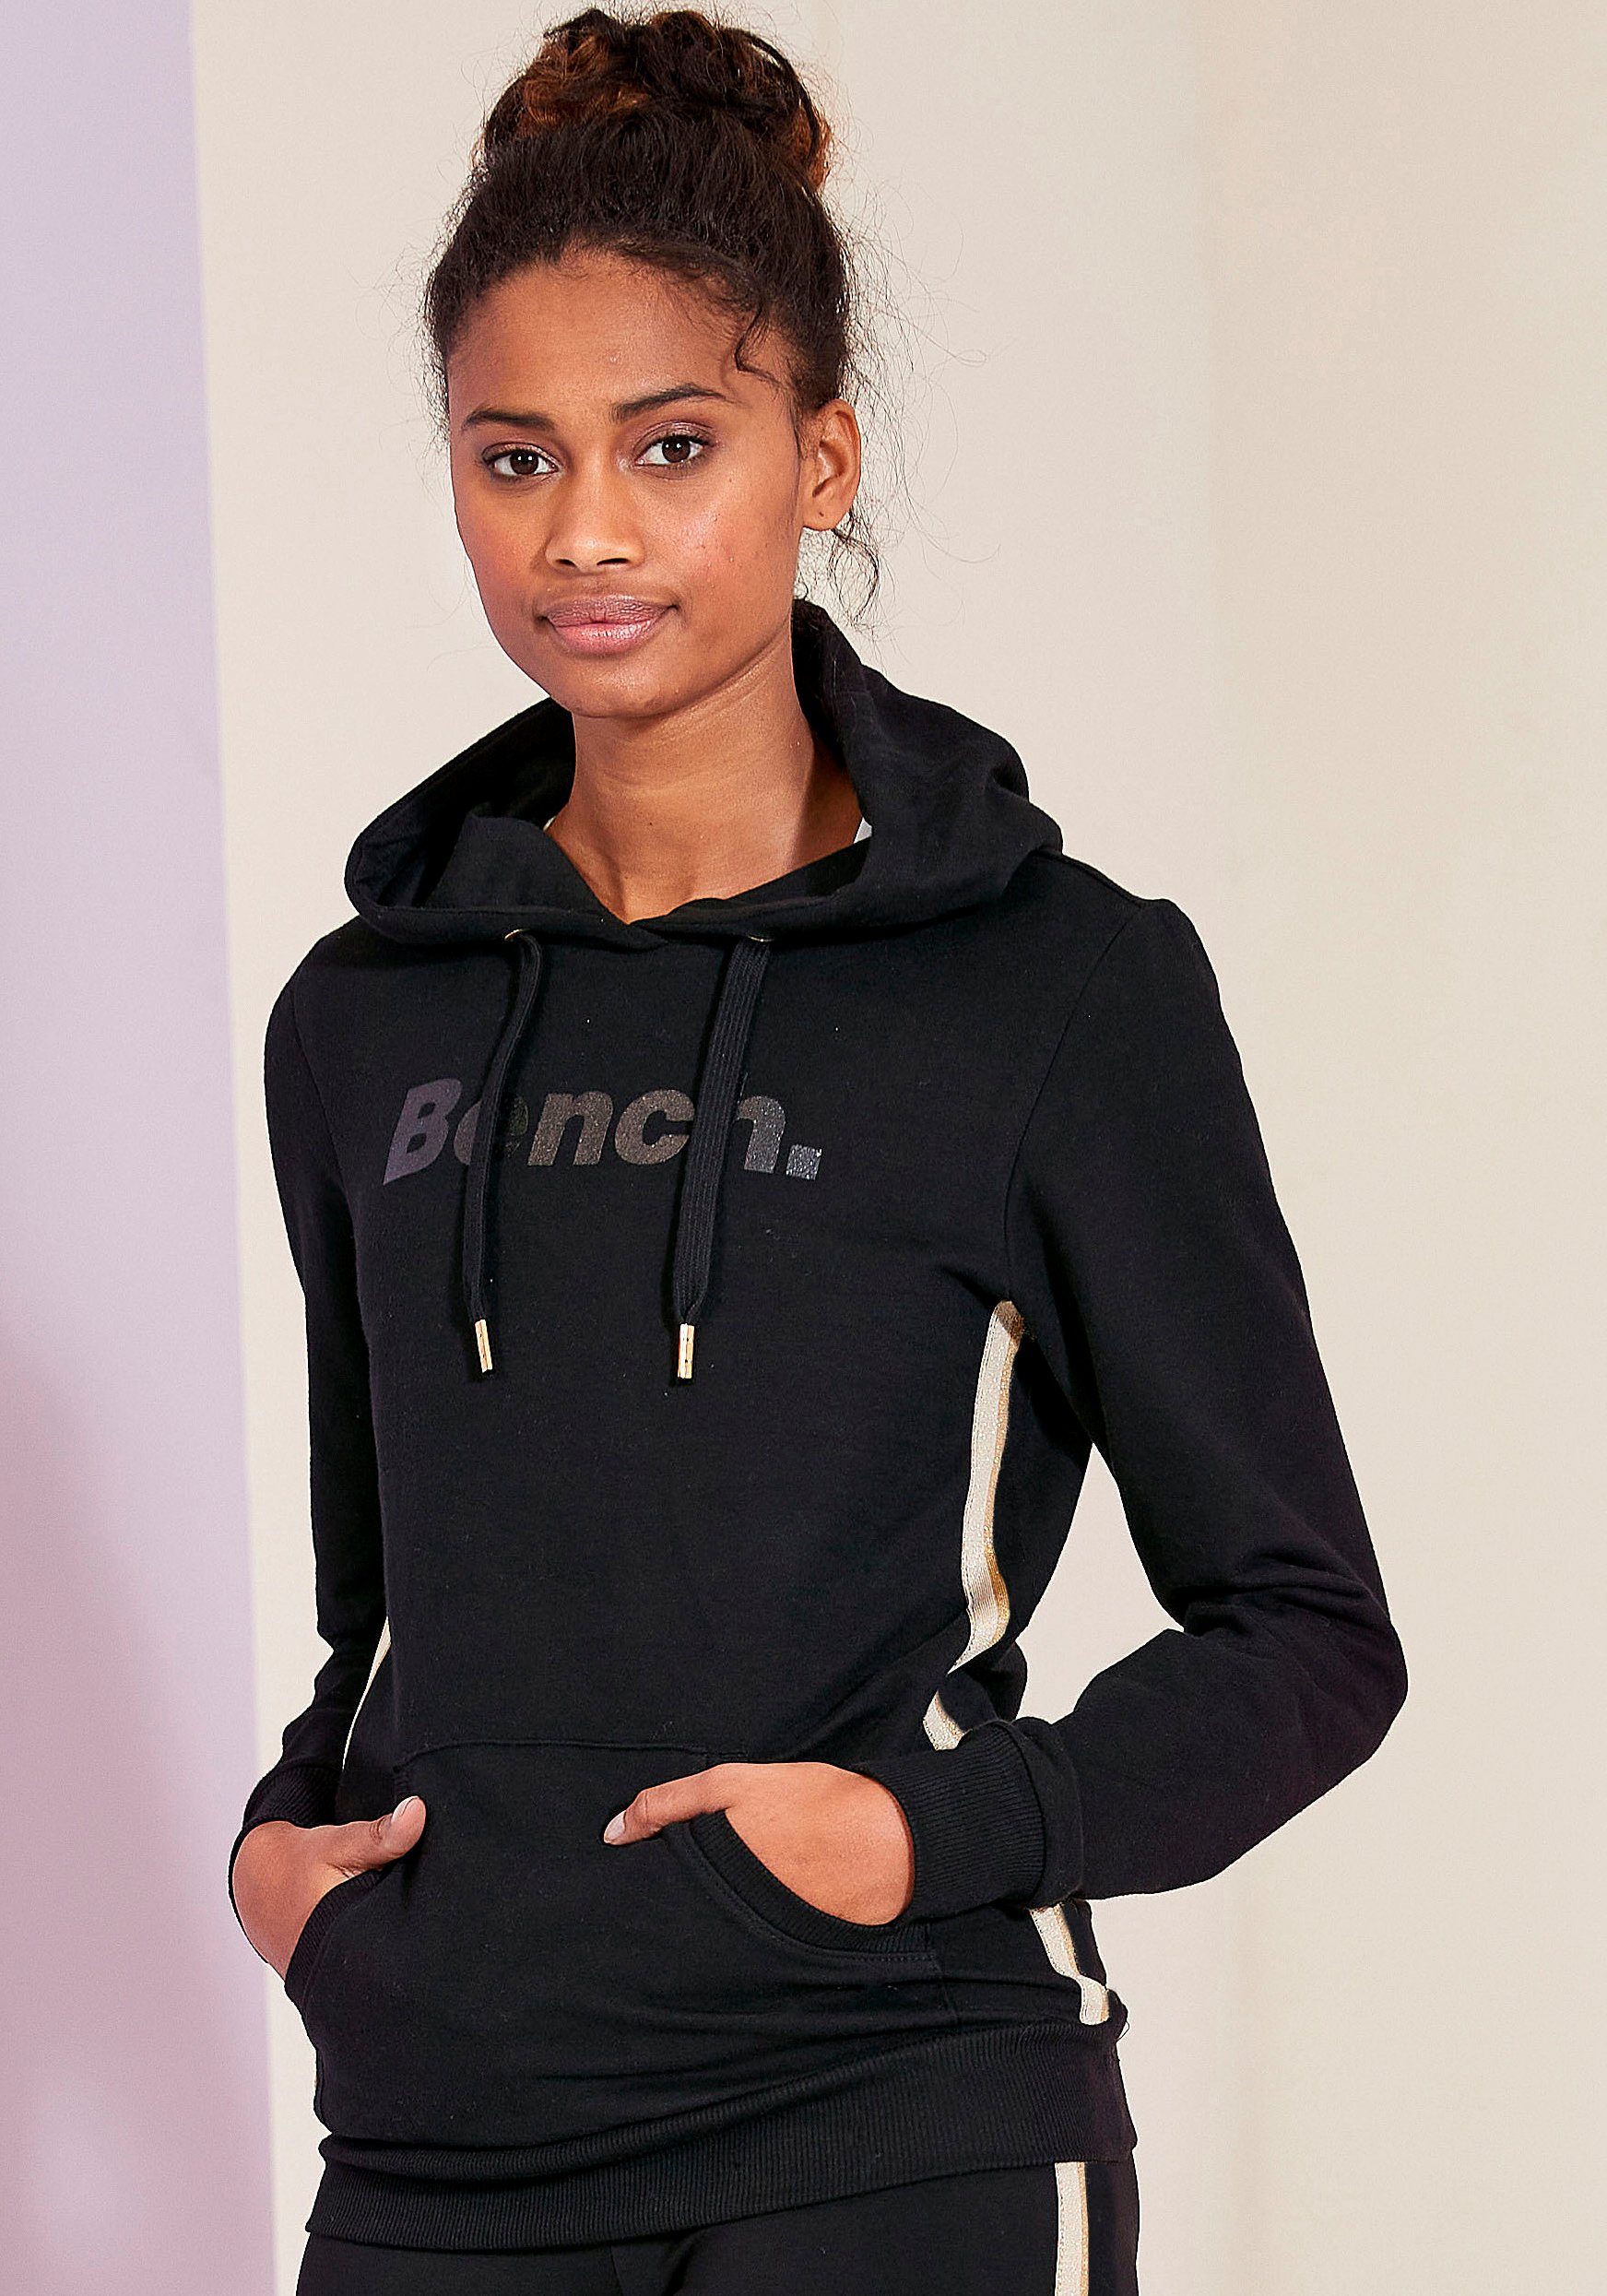 Nike Pullover für Damen online kaufen | OTTO